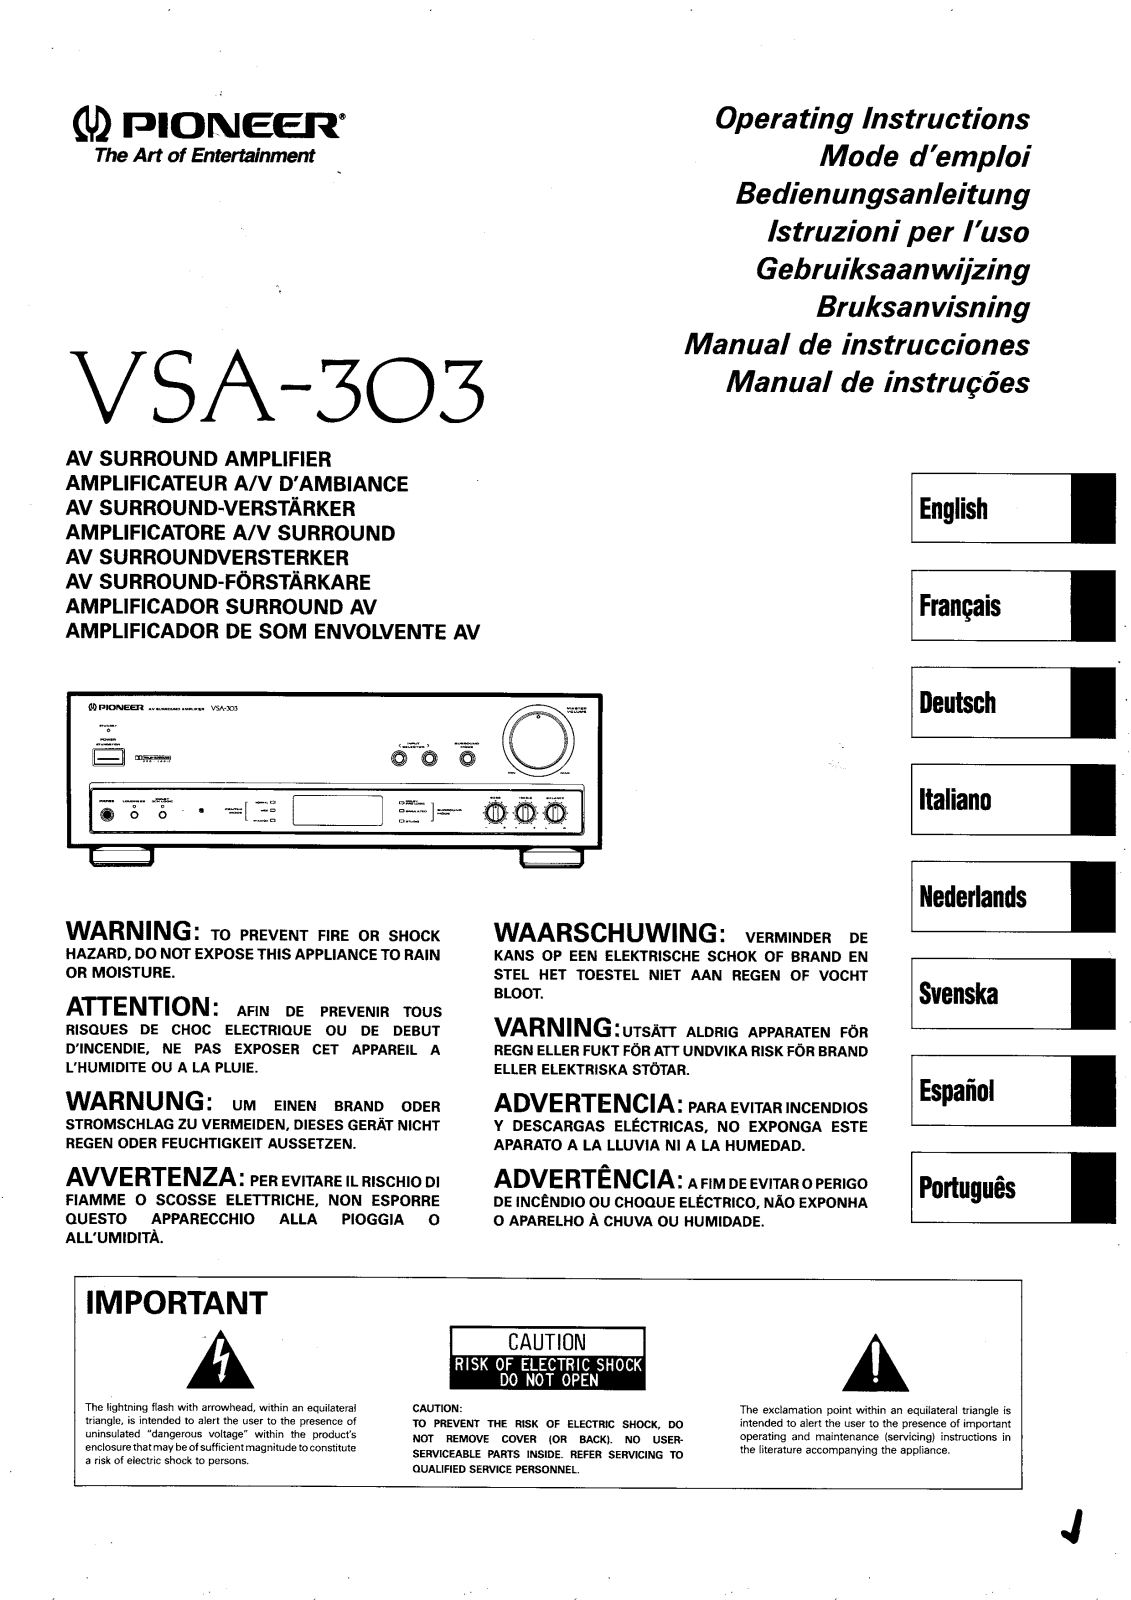 Pioneer VSA-303 Manual